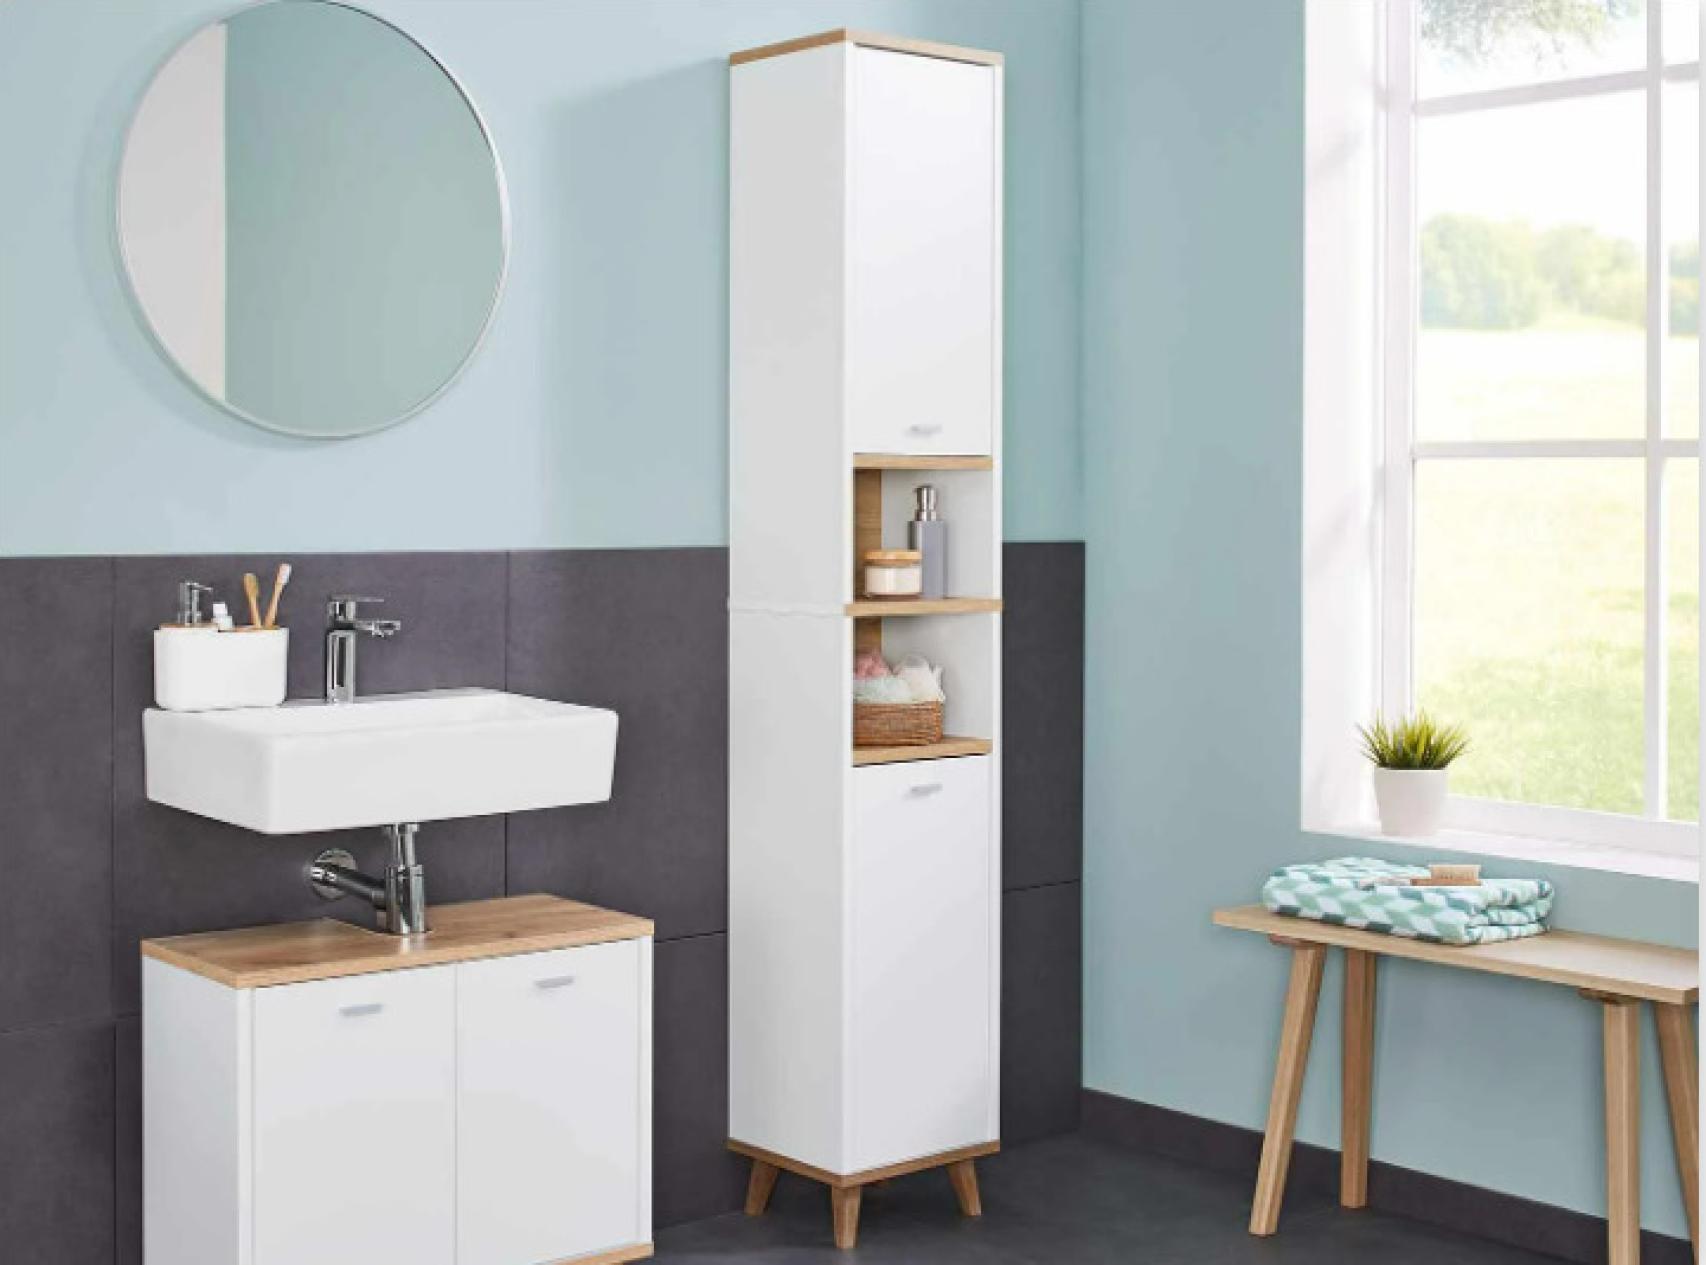 El nuevo mueble para el baño de Lidl con espacio de almacenamiento cuesta 49,99 €